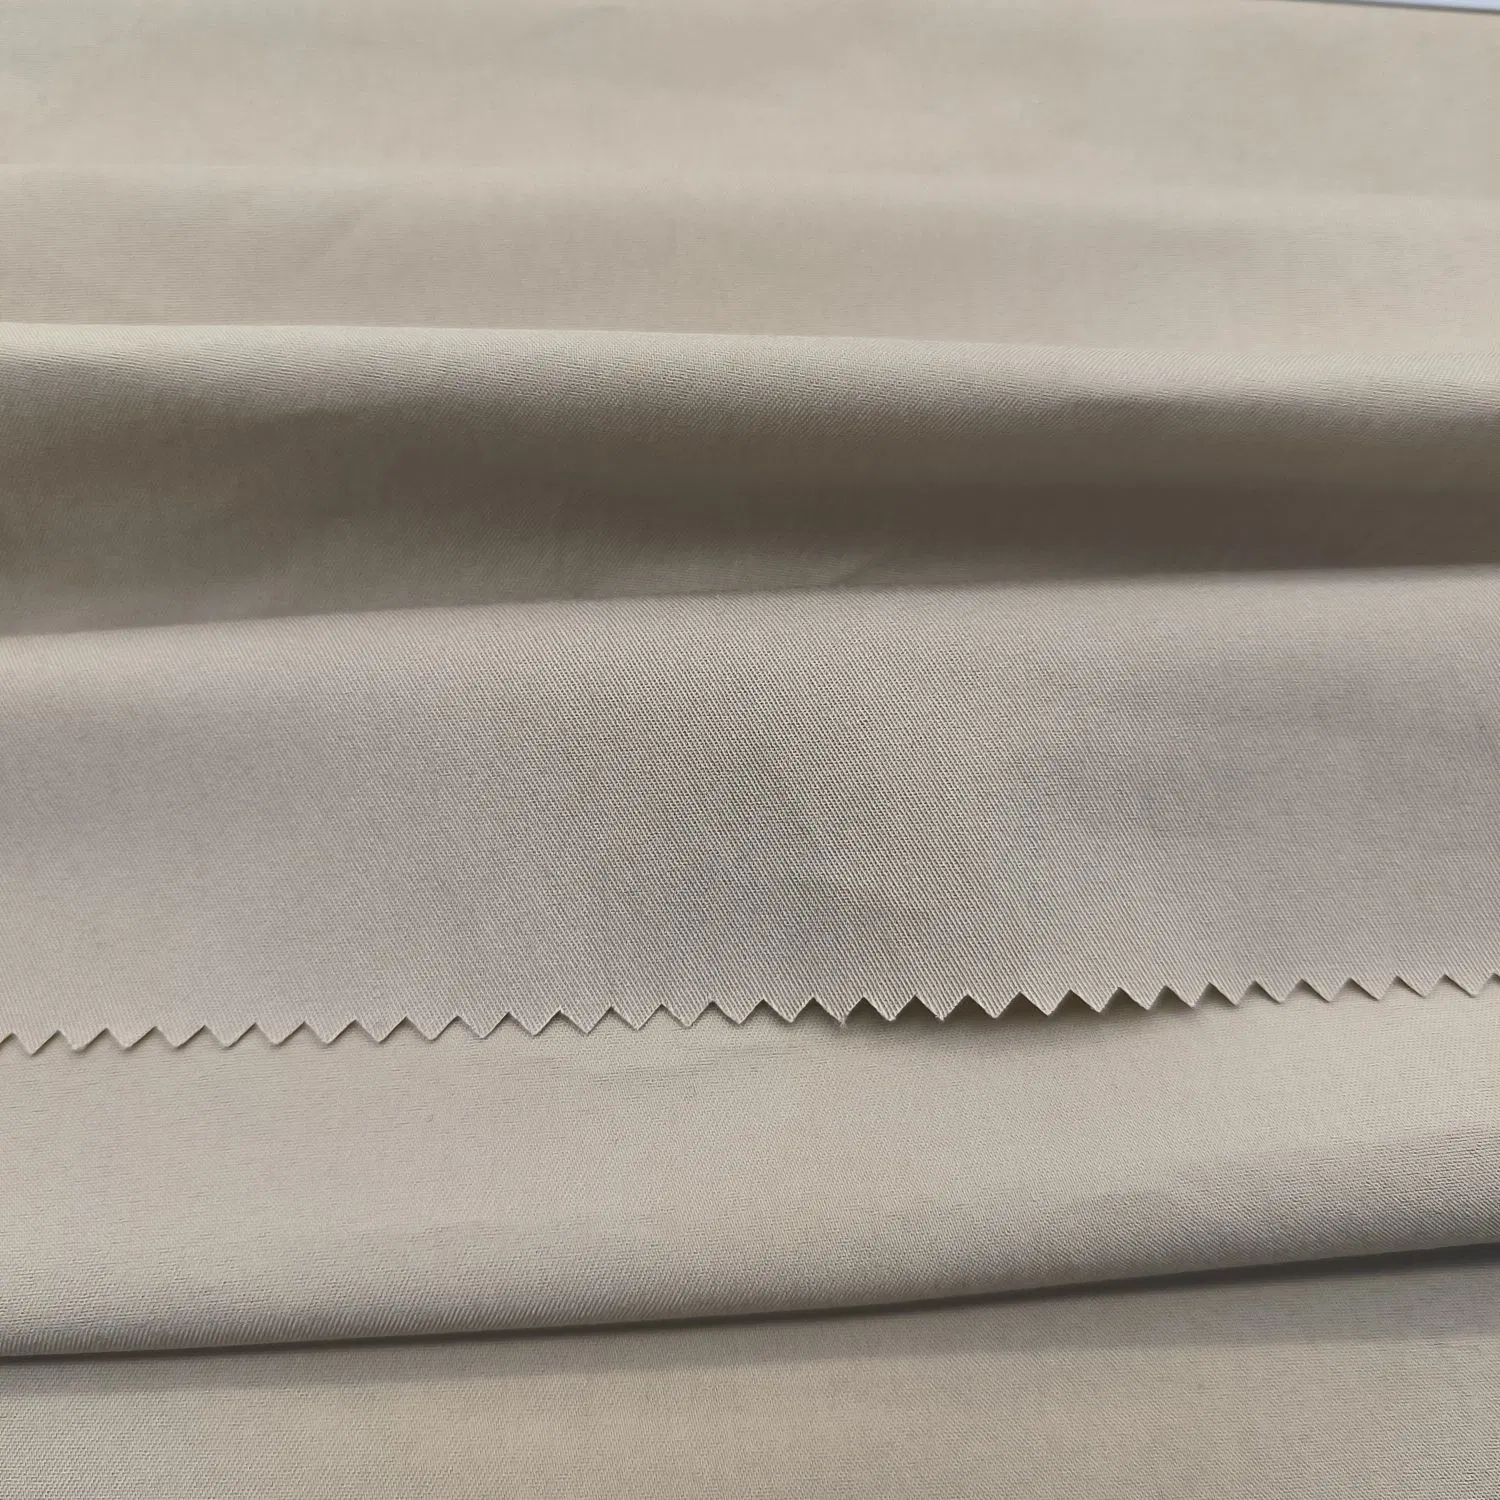 41% Nylon 55% algodón 4% Spandex Windbreaker Jacket Fabric Raw Material de alta calidad tela de algodón de nylon de sarga